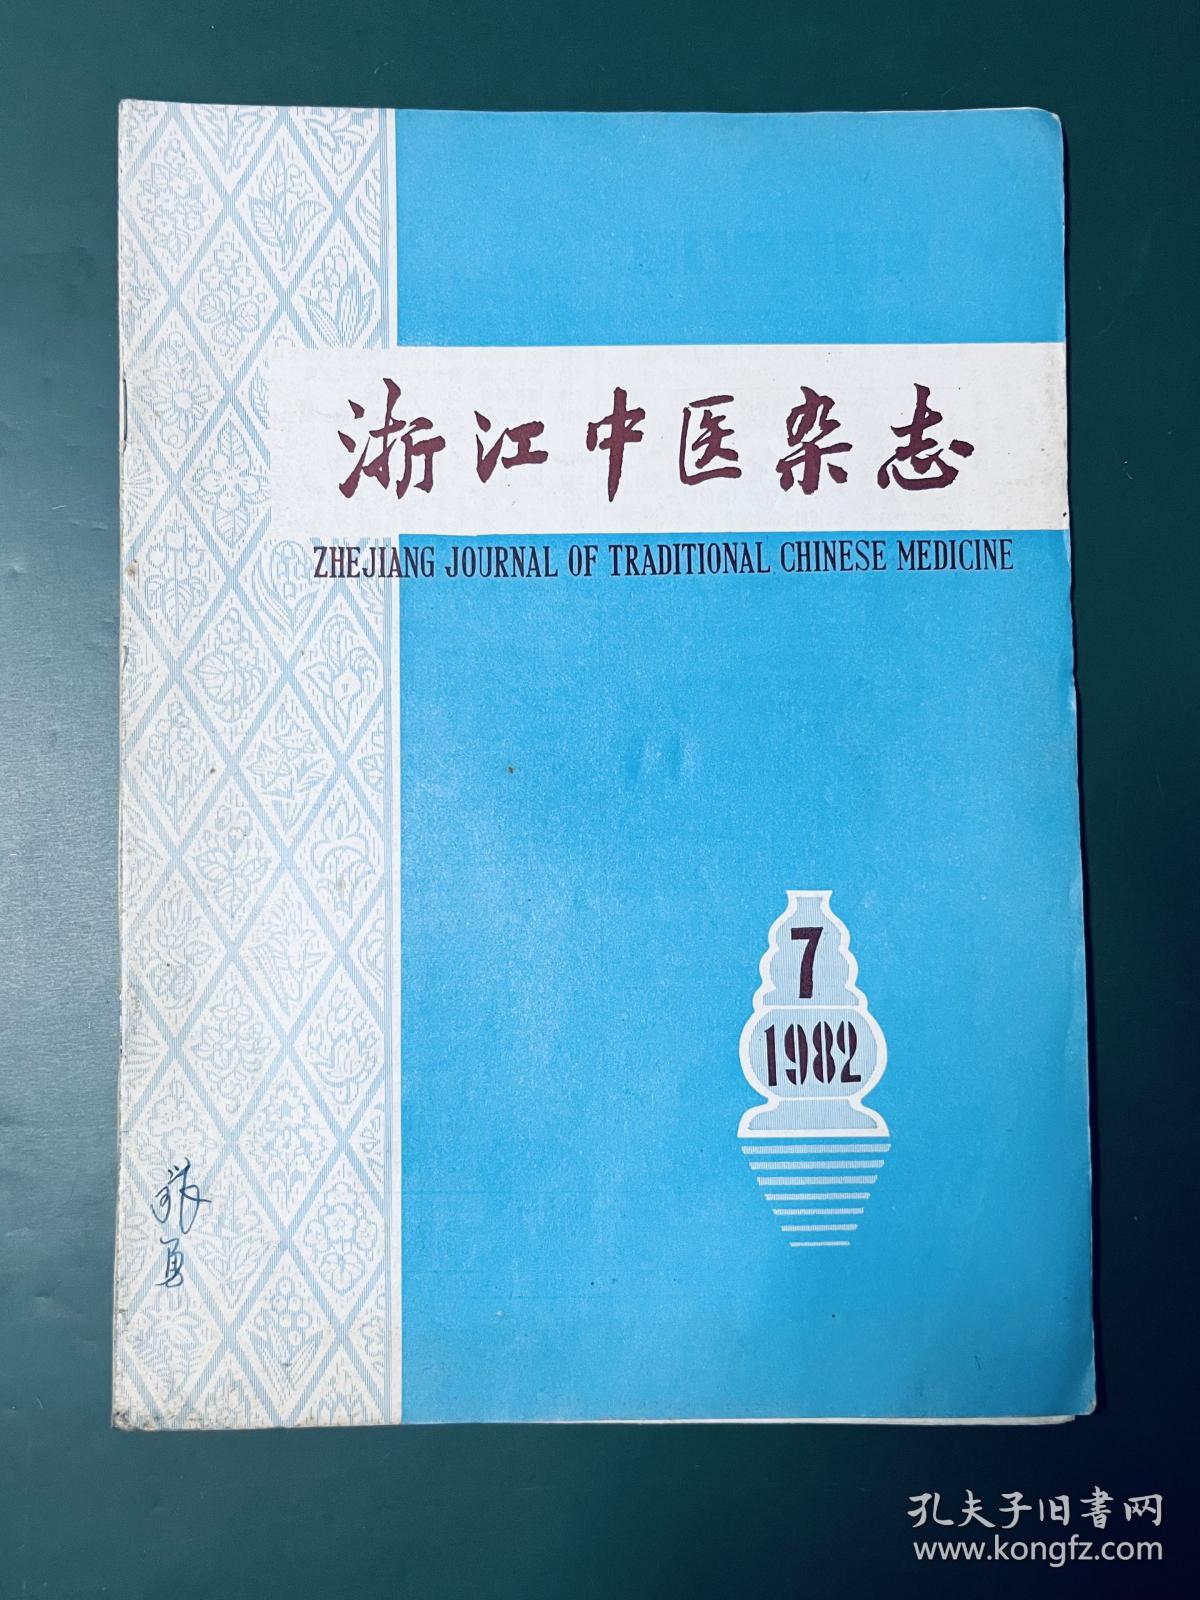 浙江中医杂志 1982年第7期 目录看图